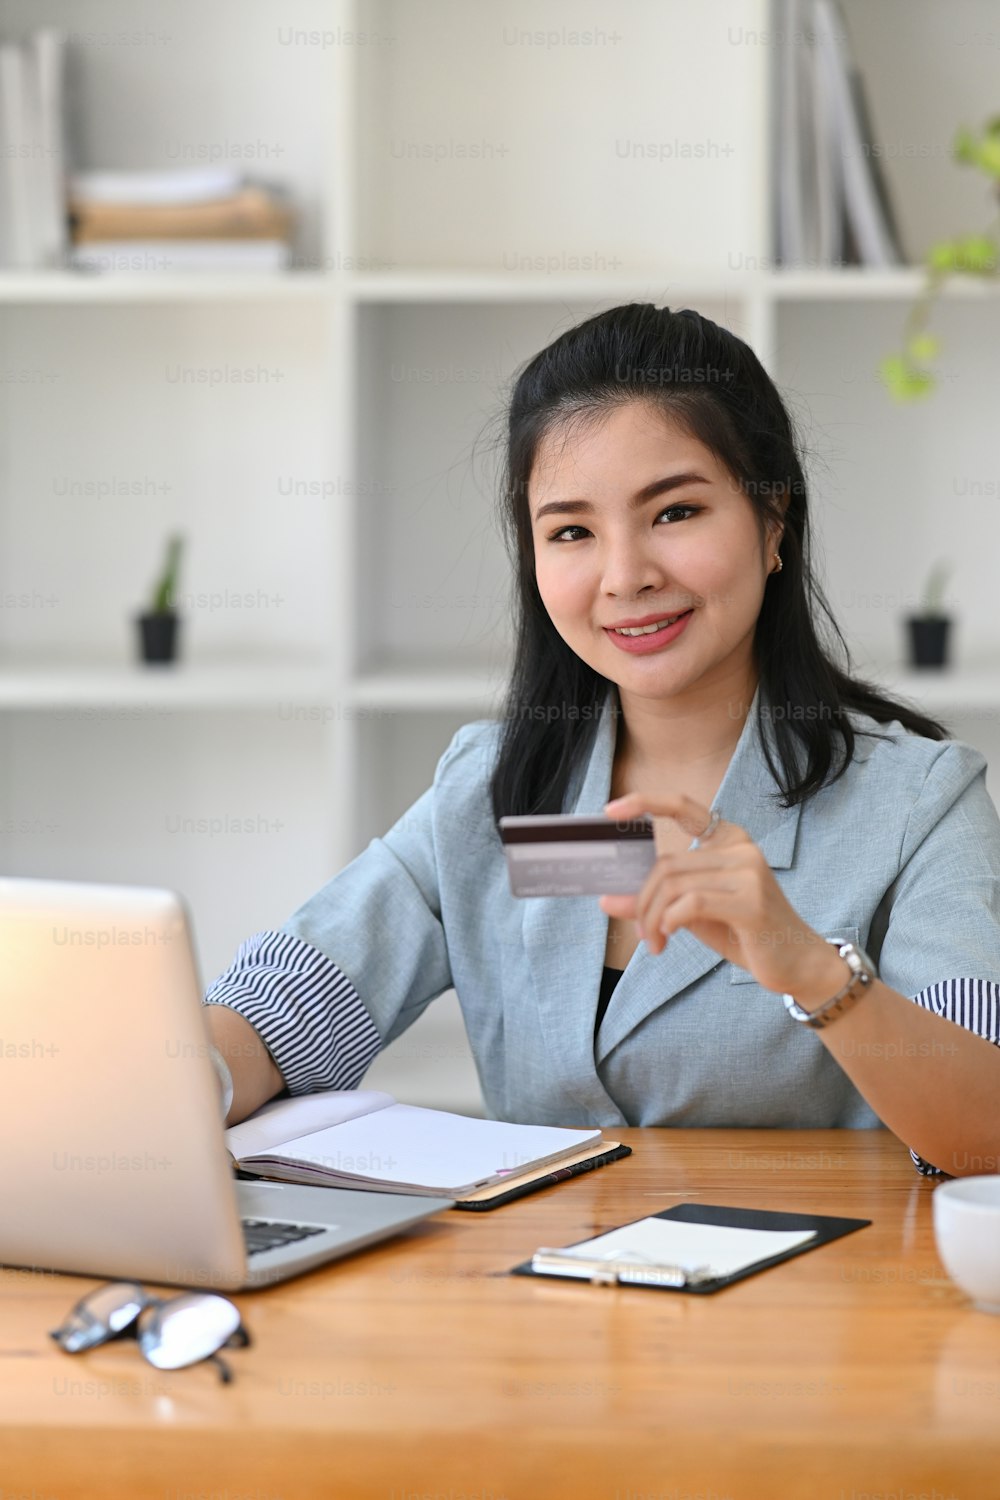 Retrato de una joven mujer asiática que agujerea la tarjeta de crédito y usa la computadora portátil para el pago en línea.